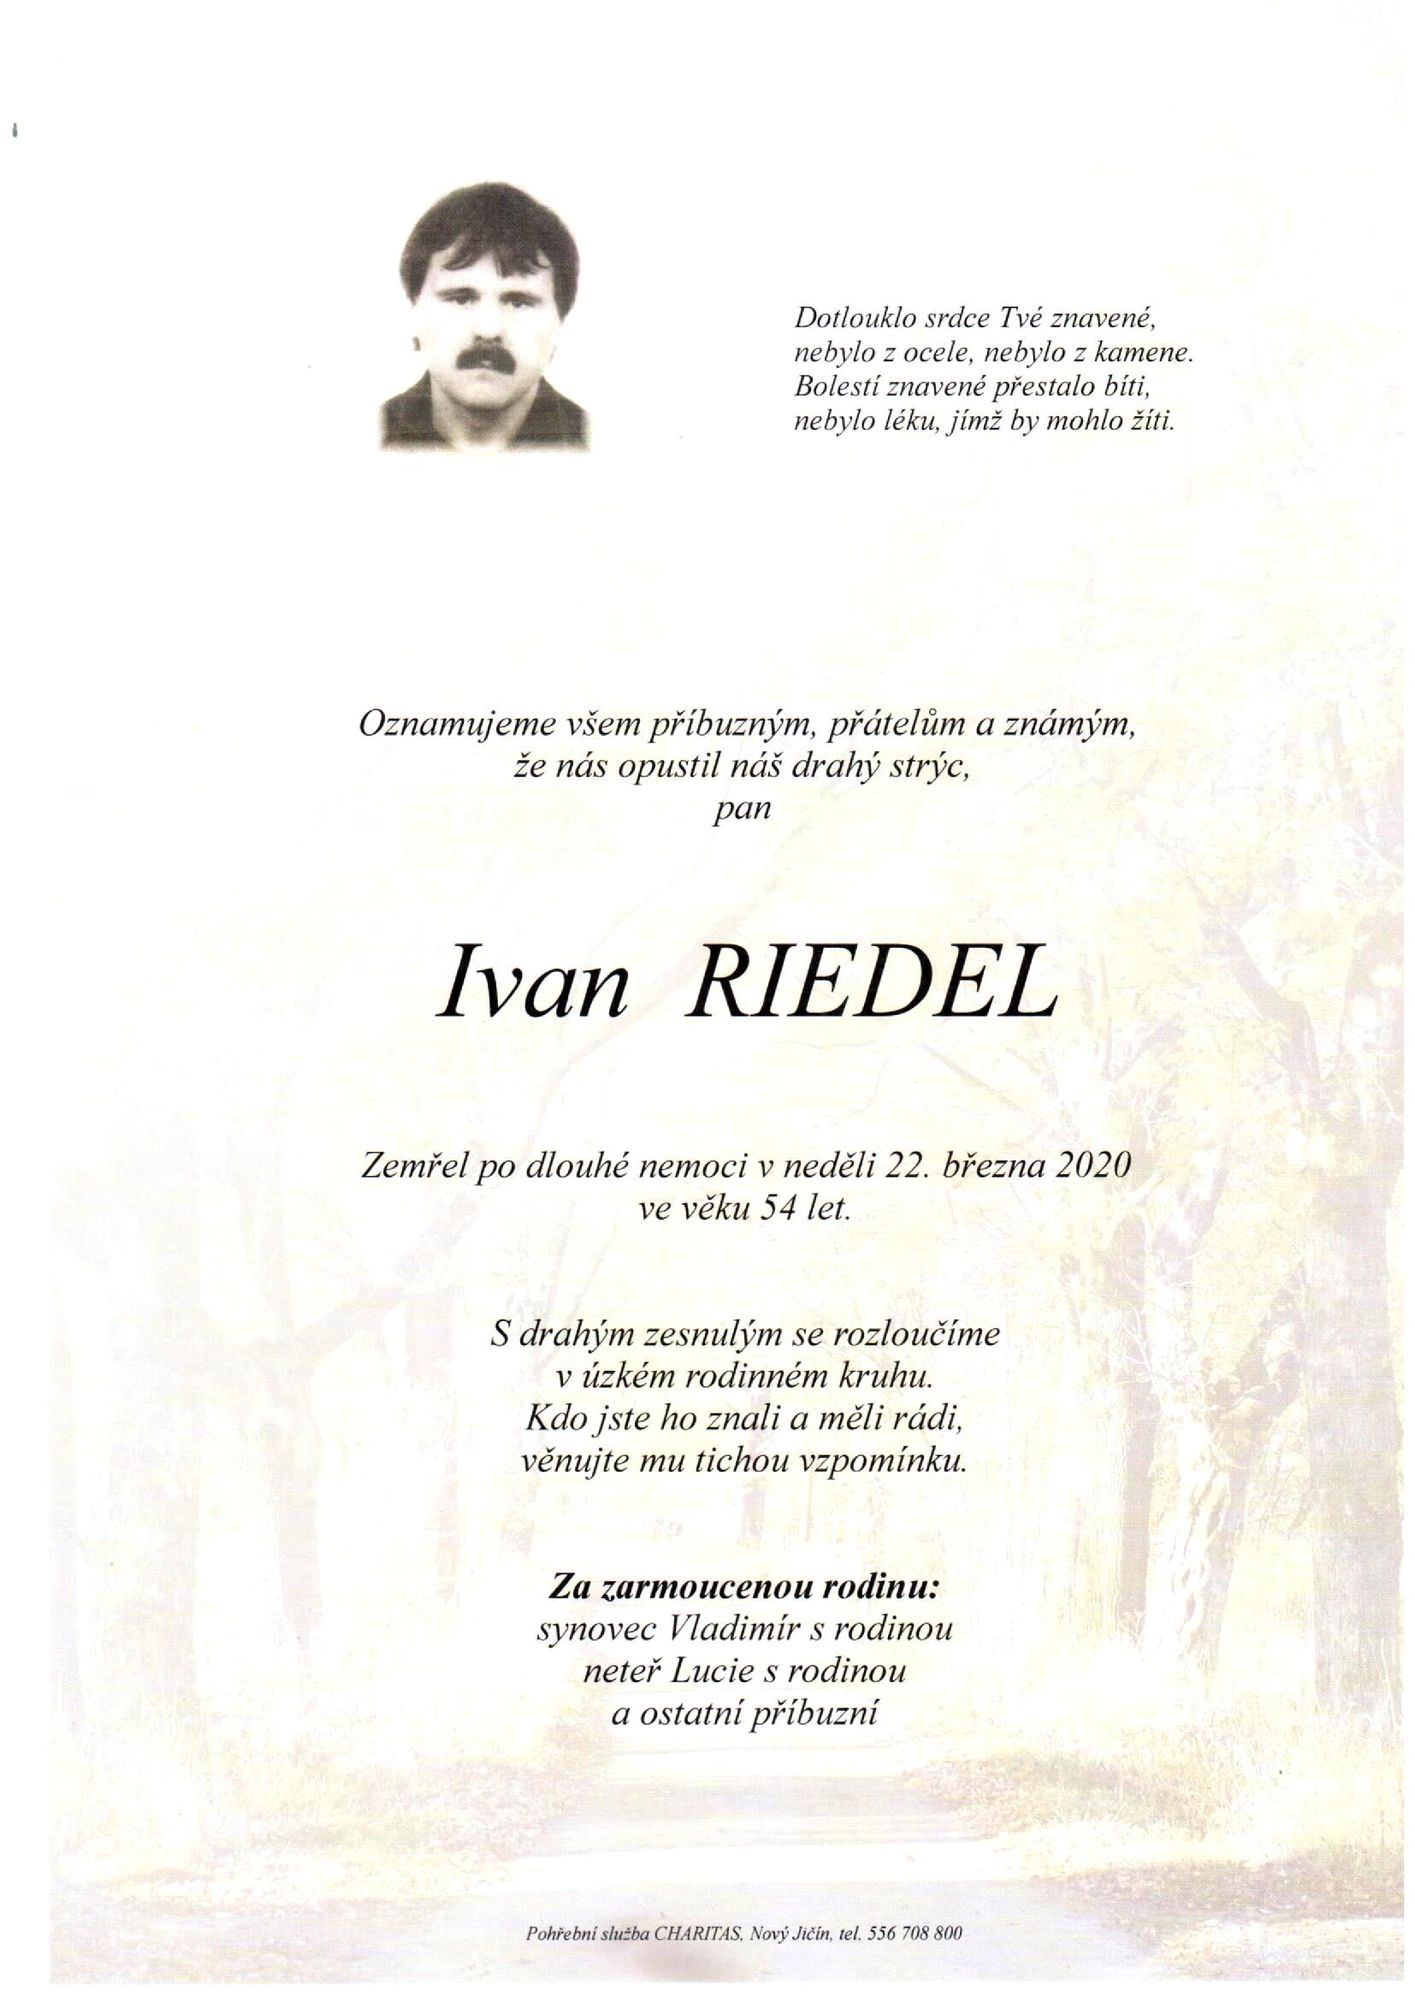 Ivan Riedel